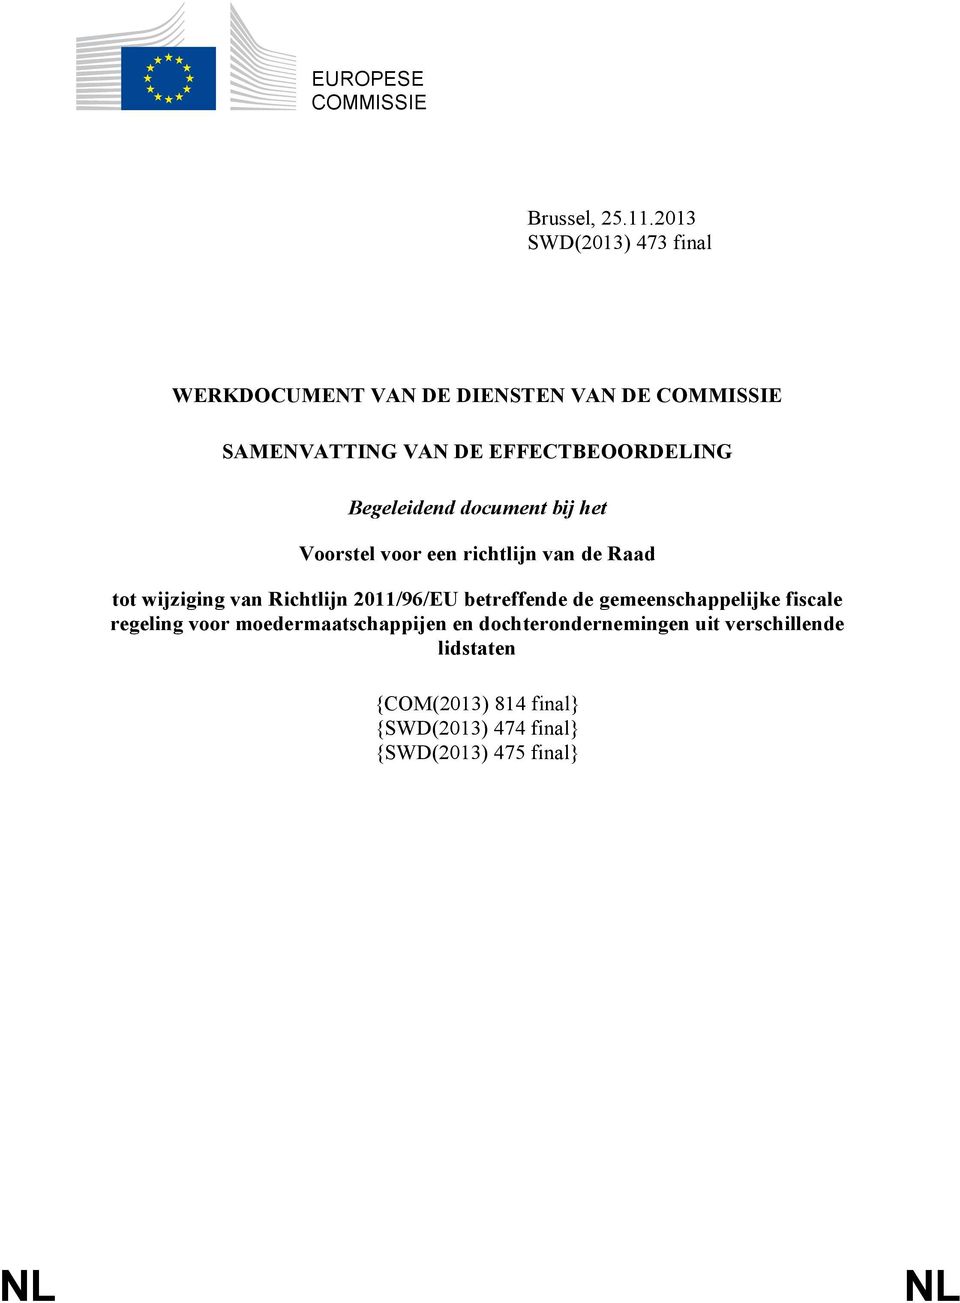 Begeleidend document bij het Voorstel voor een richtlijn van de Raad tot wijziging van Richtlijn 2011/96/EU